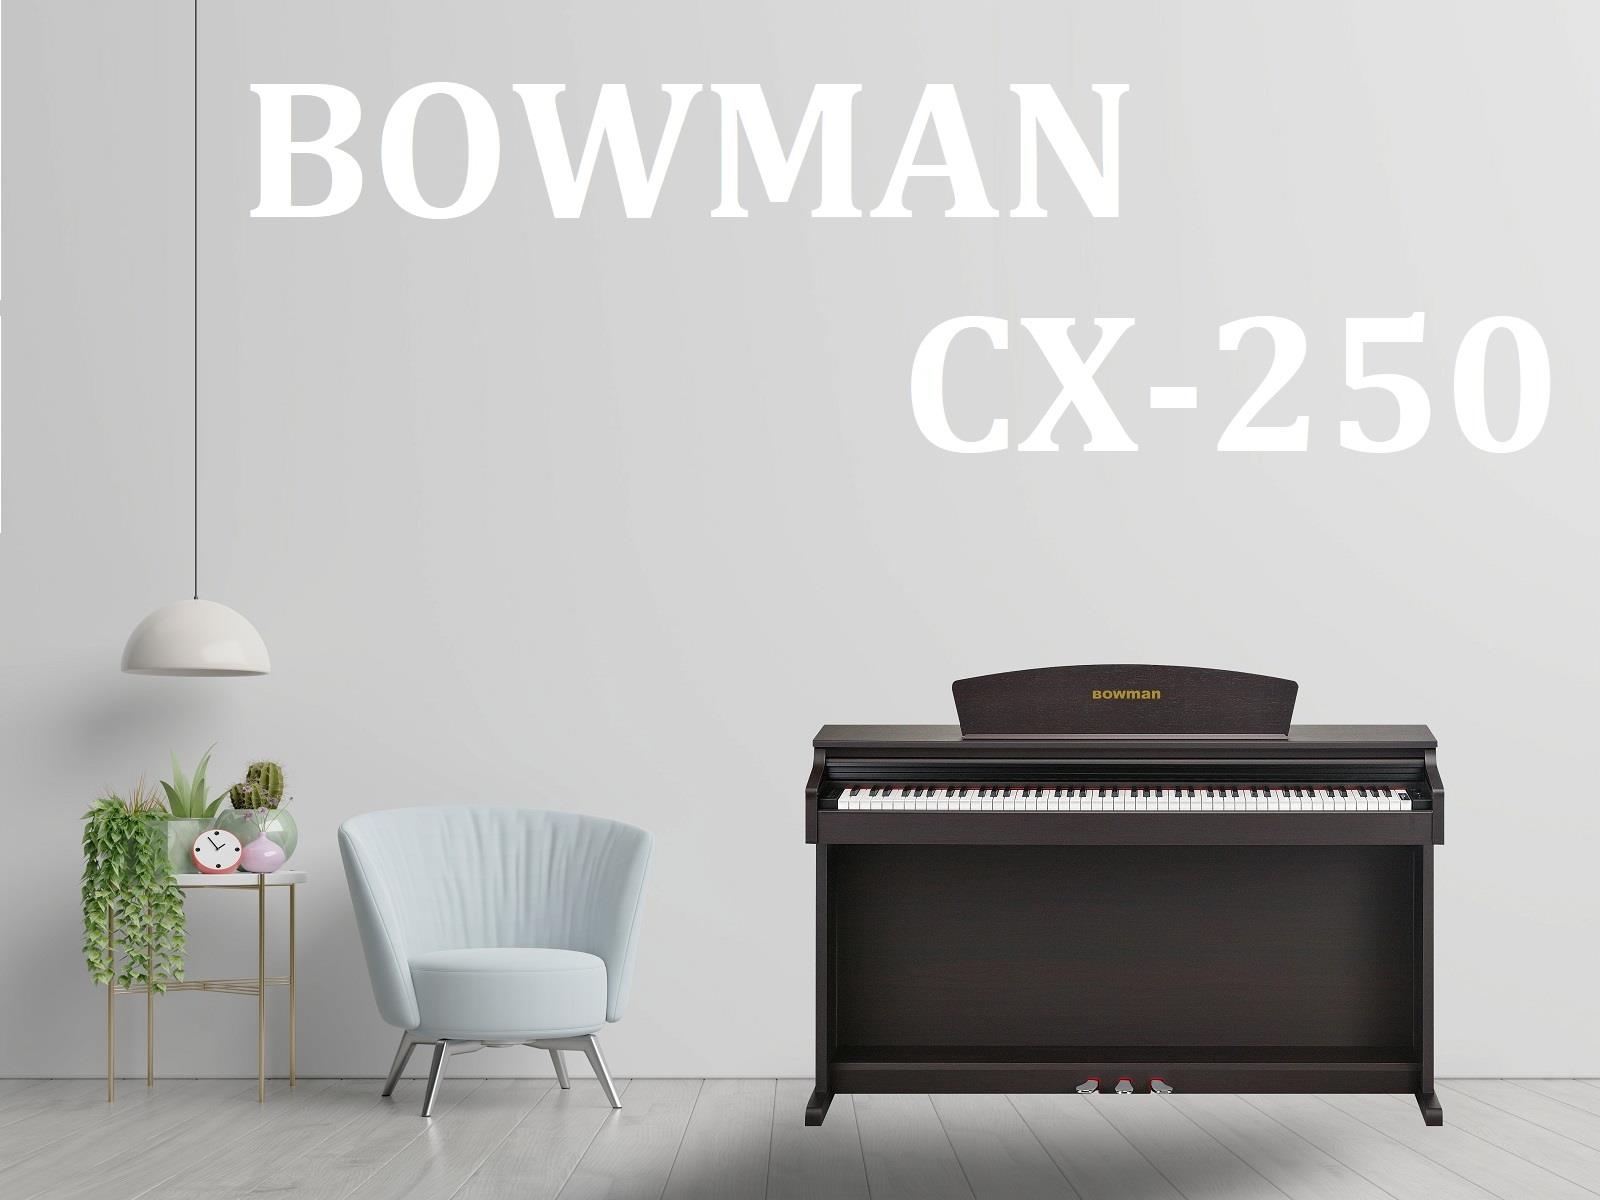 ​Đàn PIANO điện BOWMAN CX-250+ thực sự là một sản phẩm ấn tượng - BowmanPIANO.com.vn